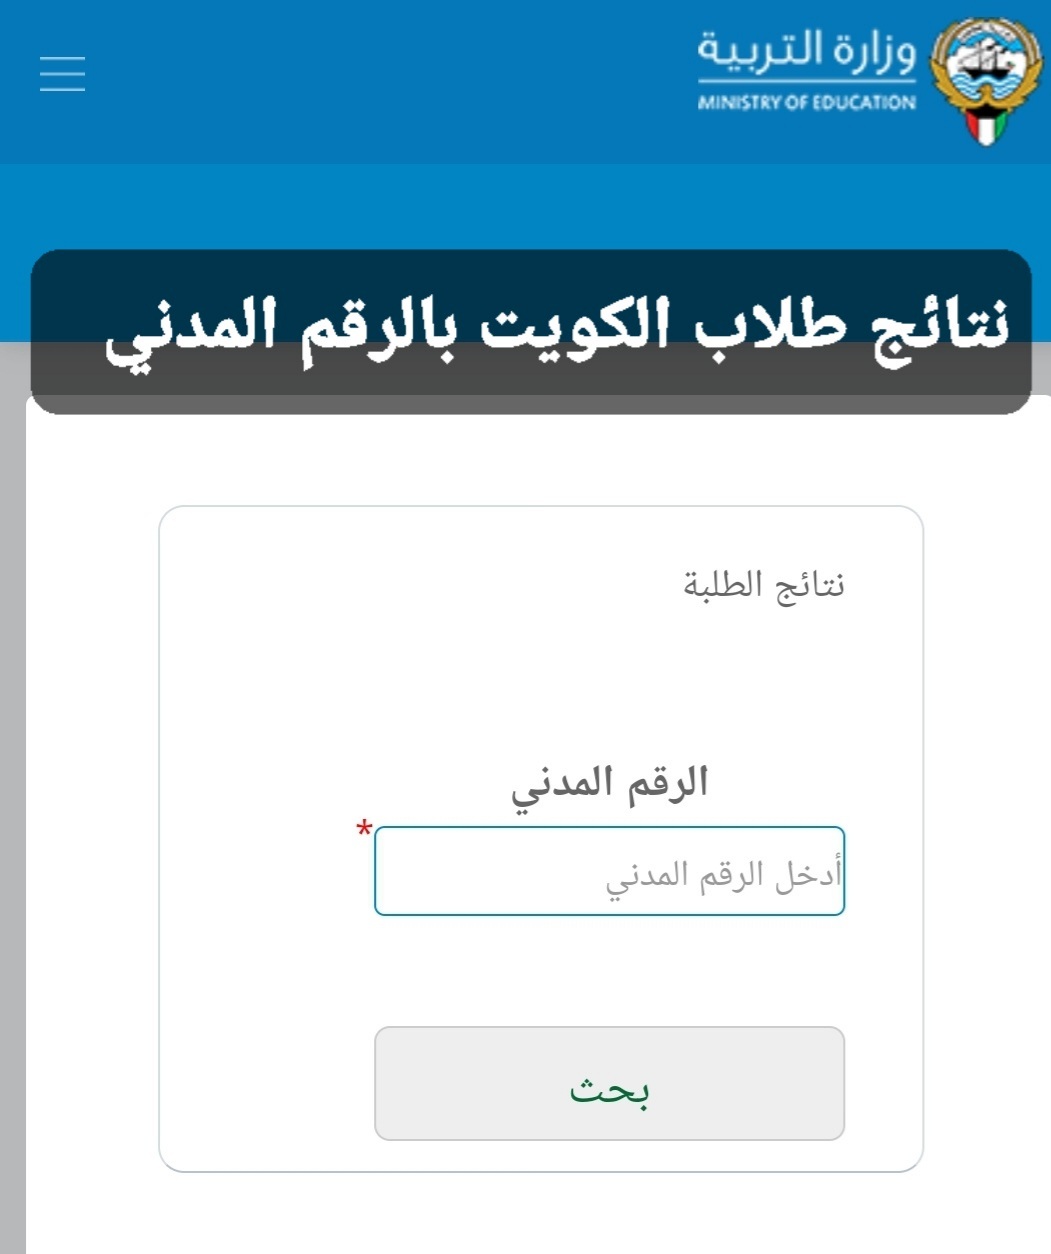 رابط موقع نتائج طلاب الكويت 2022 لمعرفة نتائج الطلبة وزارة التربية بالرقم المدني للمرحلة المتوسطة والابتدائية